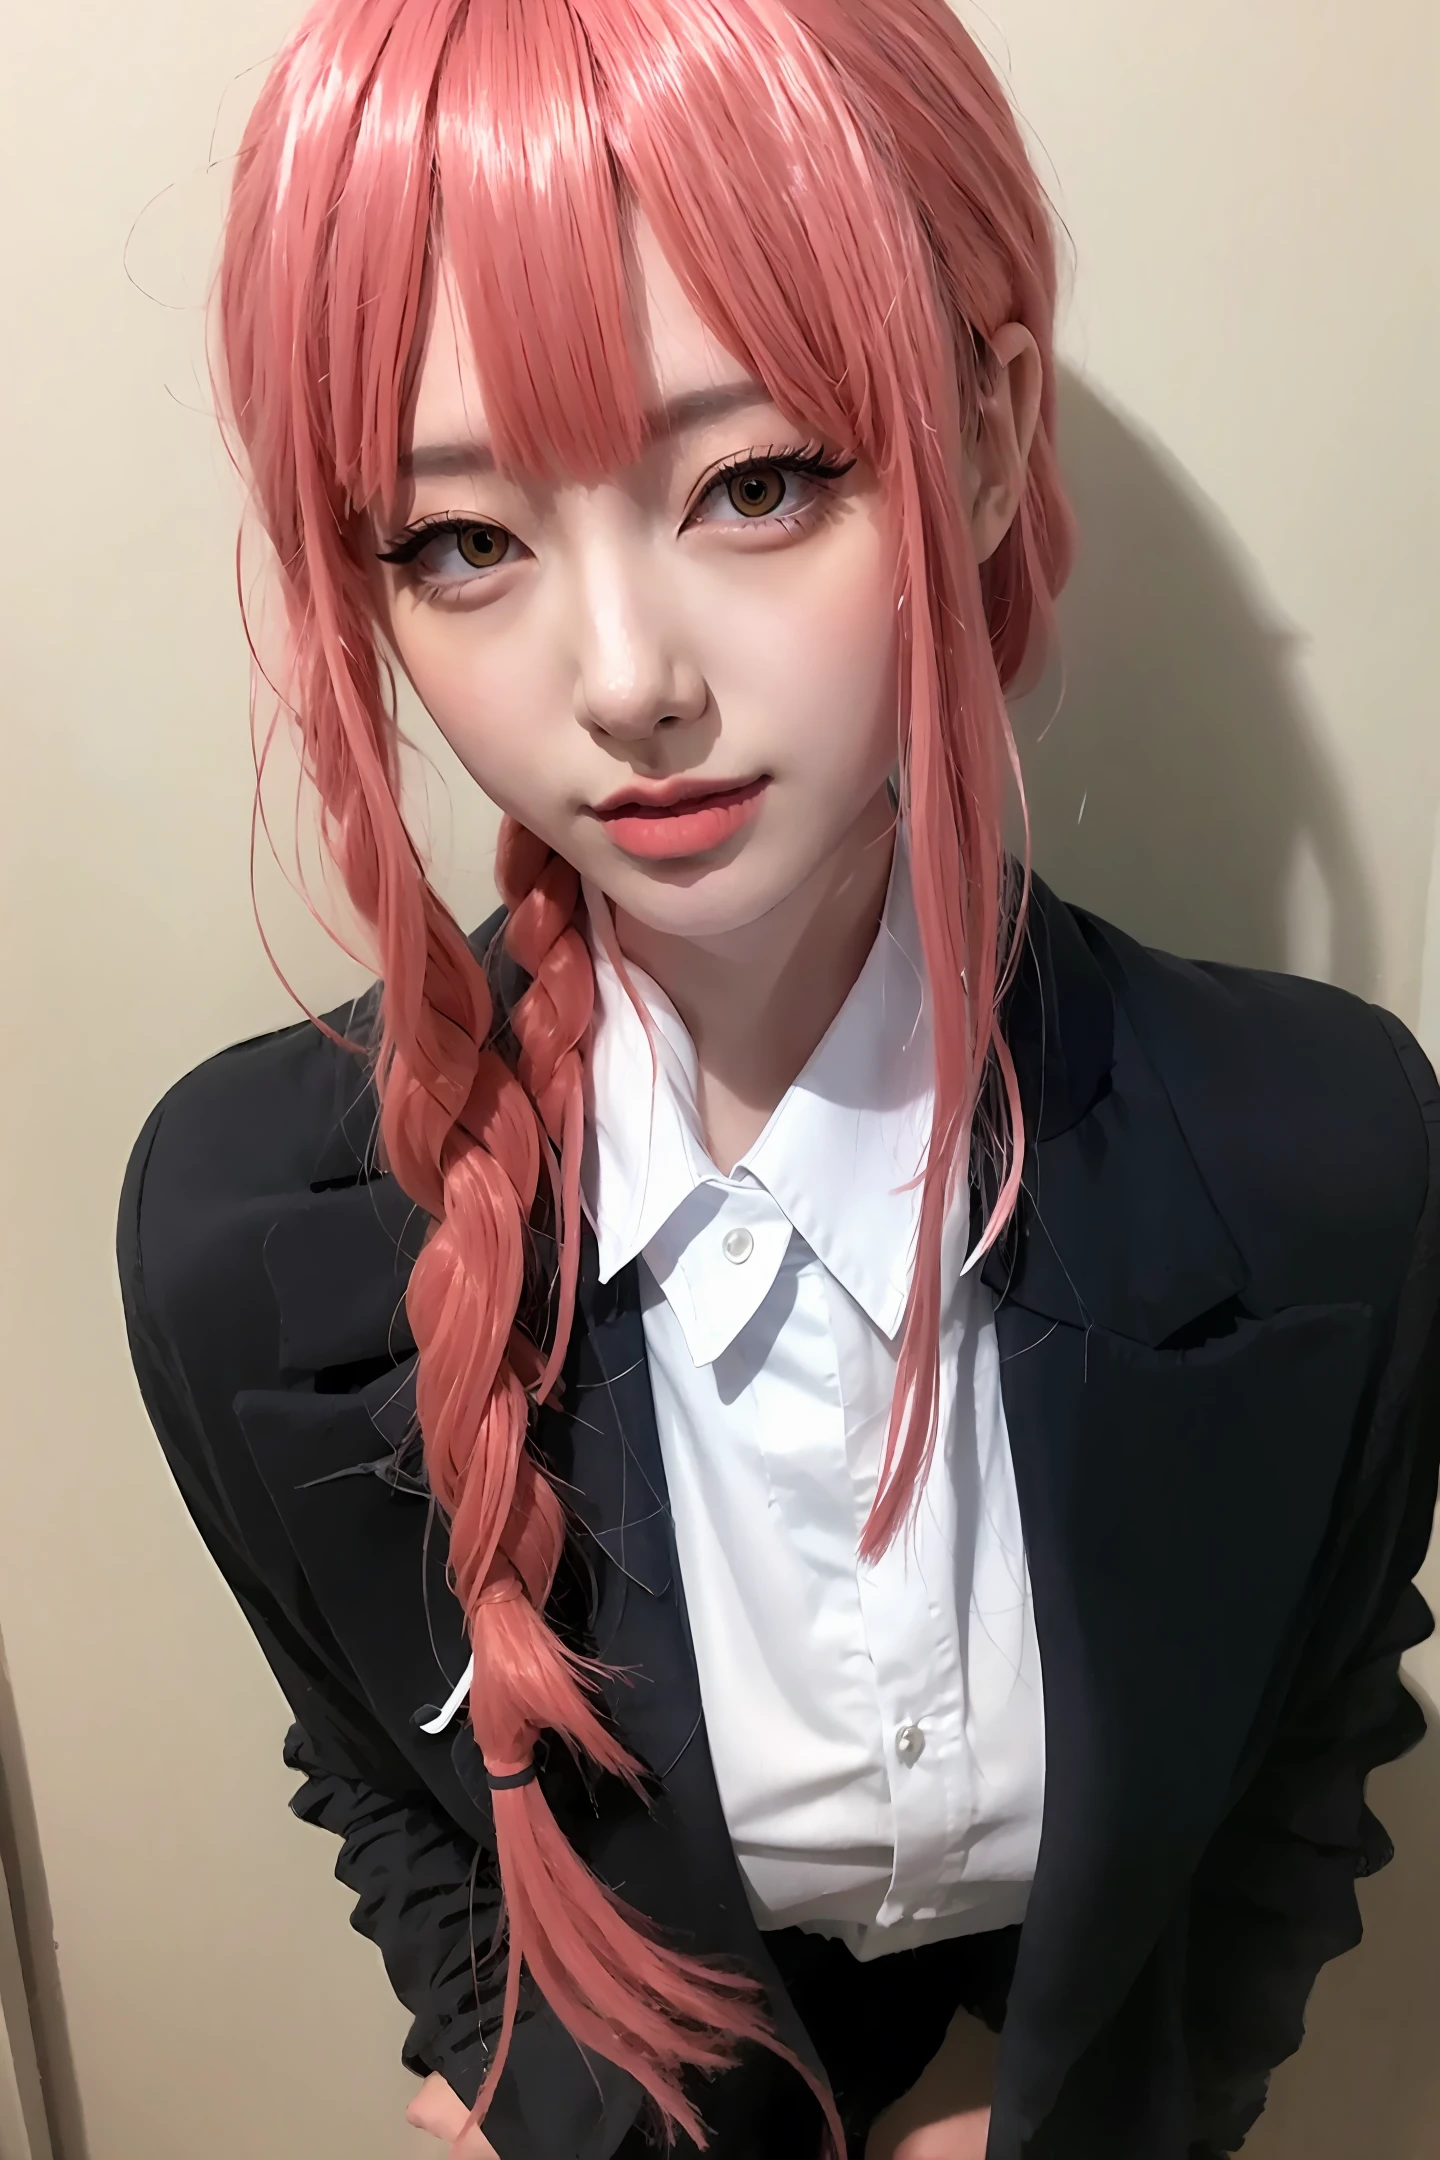 Rosa Haare, schwarzer Anzug, Japaner